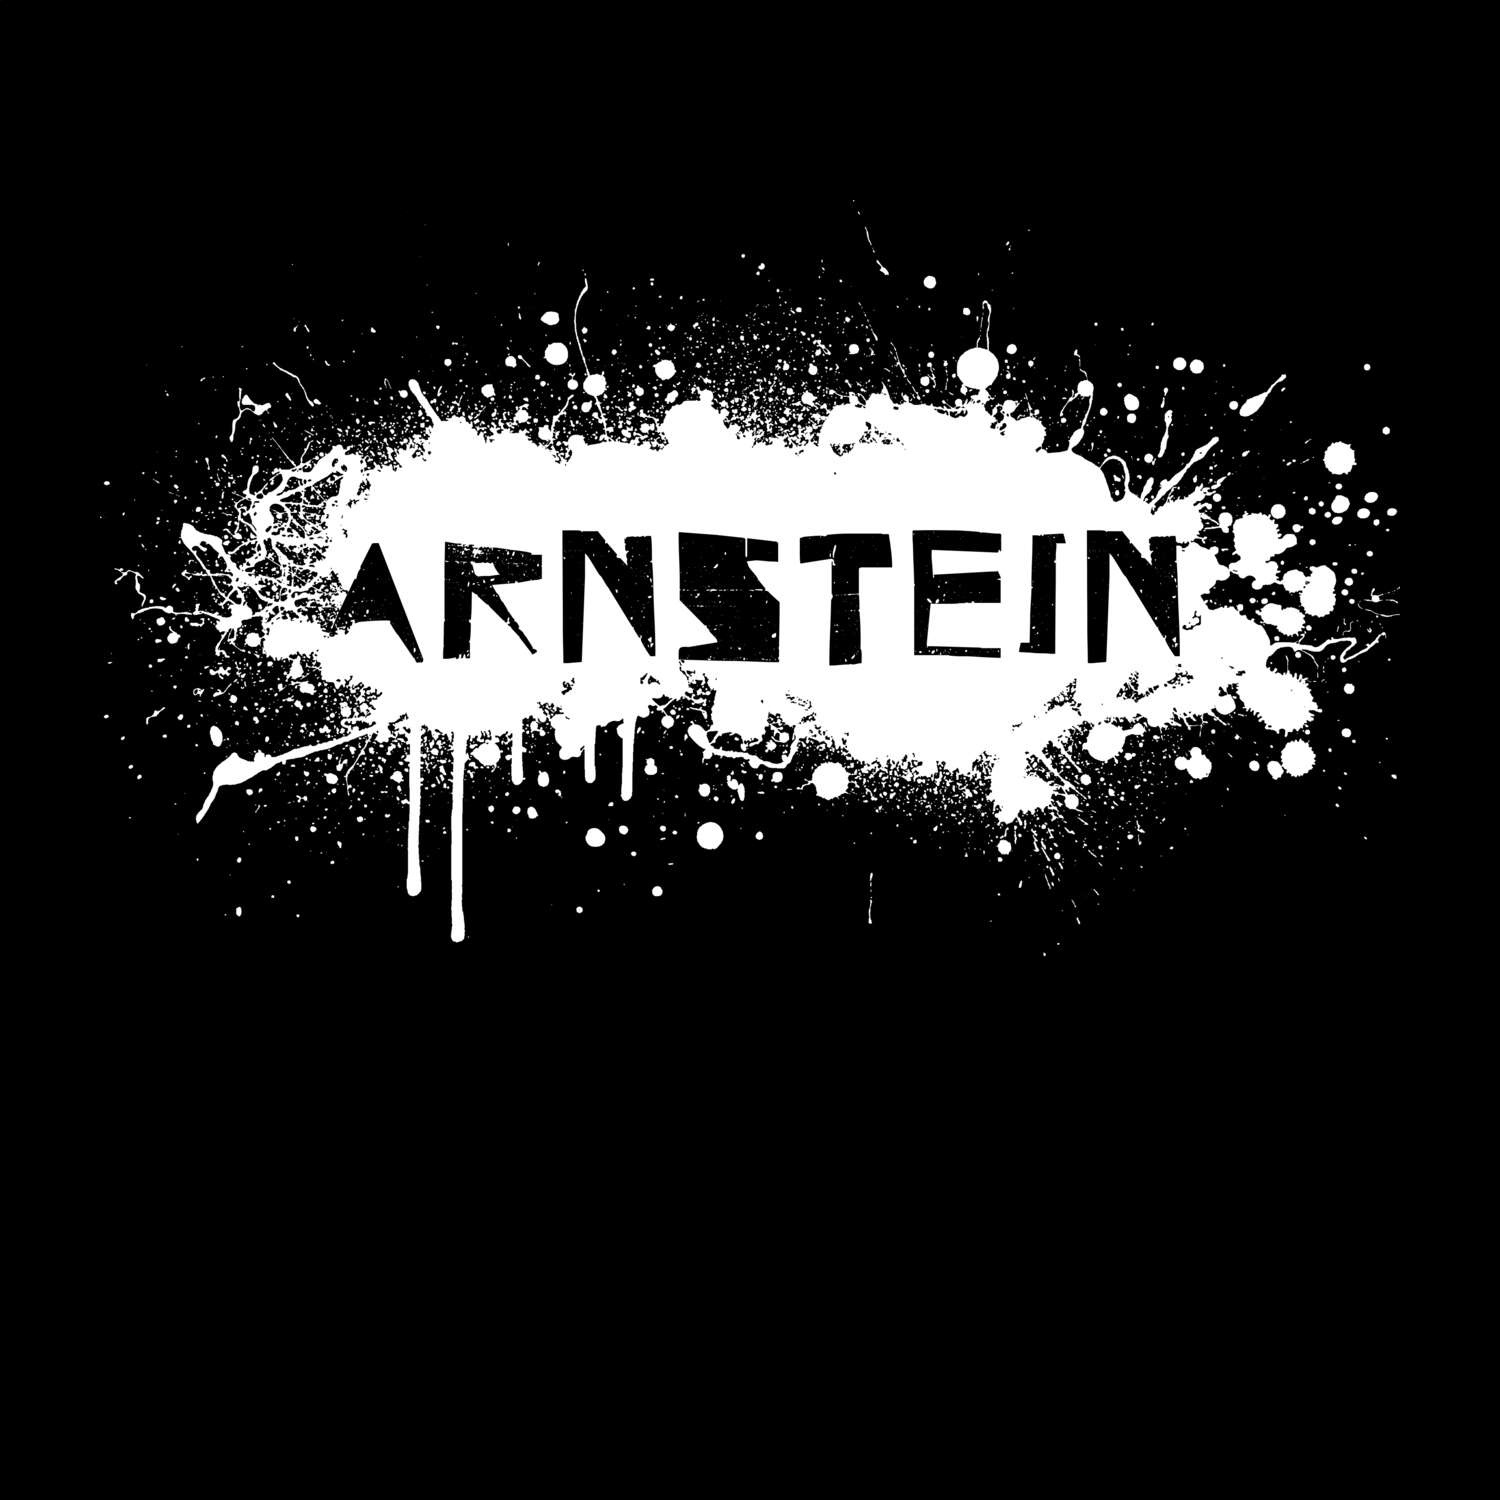 Arnstein T-Shirt »Paint Splash Punk«